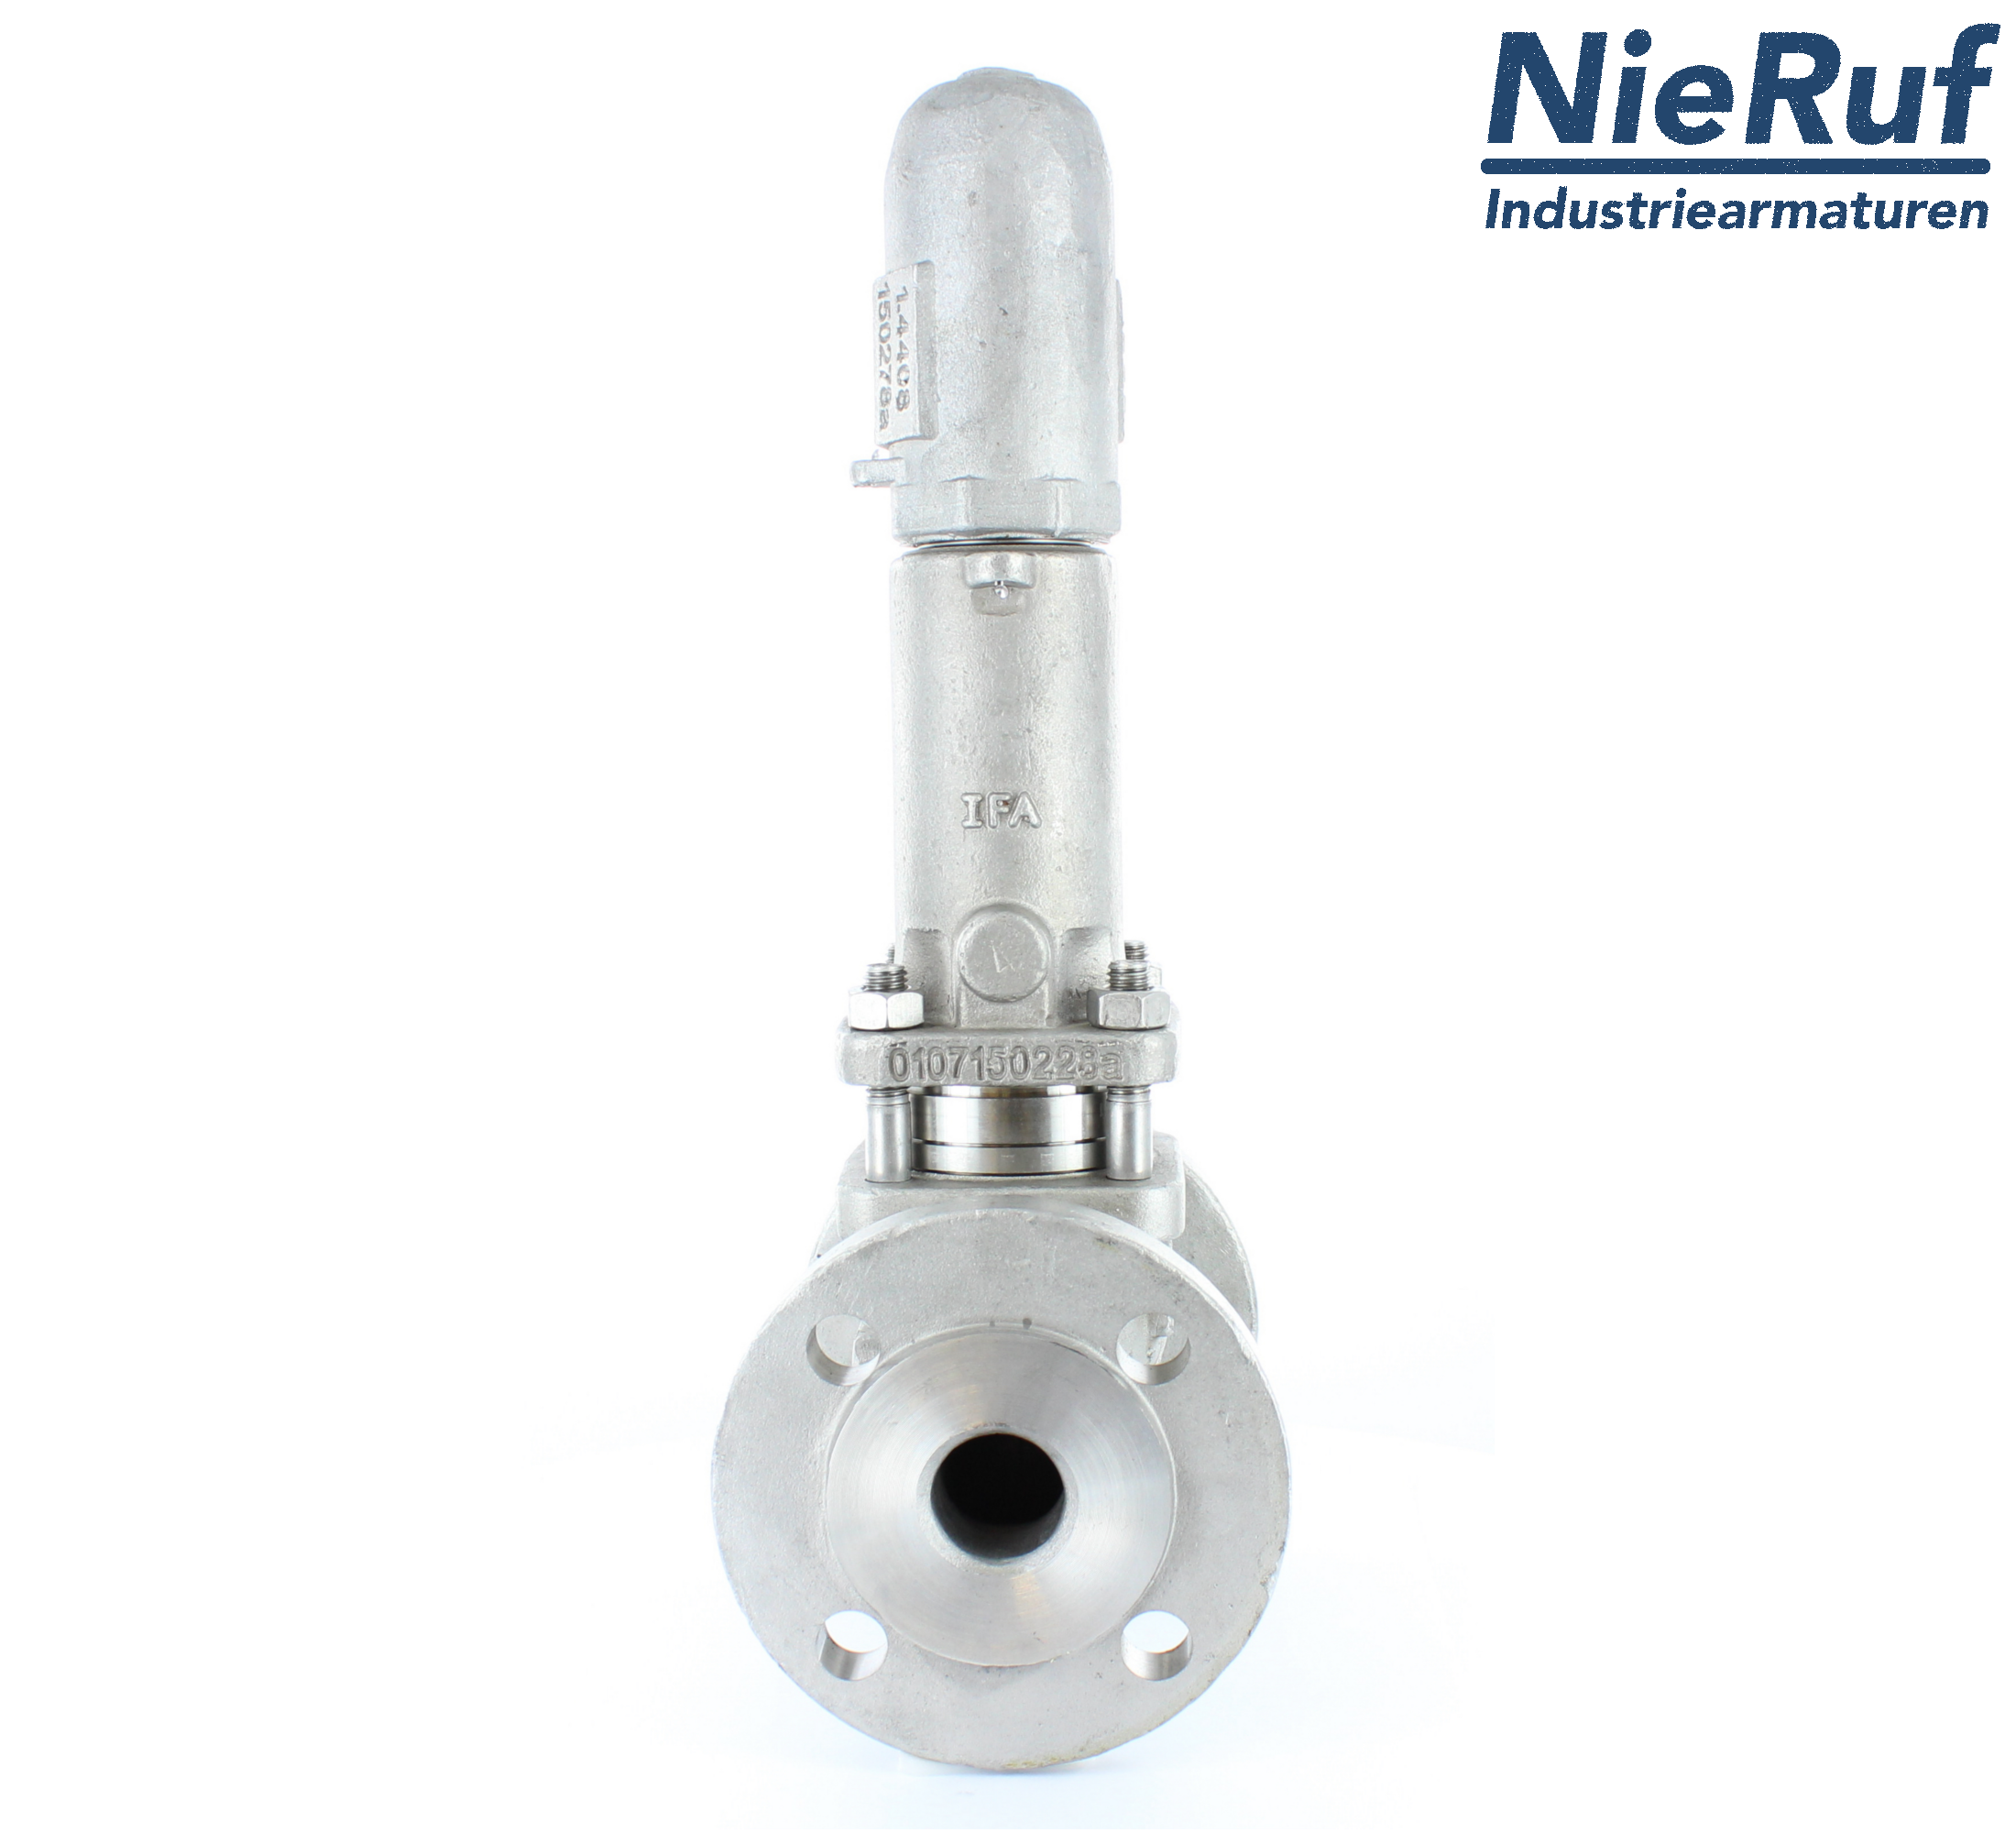 piston overflow valve DN 100 UV13 cast iron 1.0619+N 1,0 - 3,0 bar